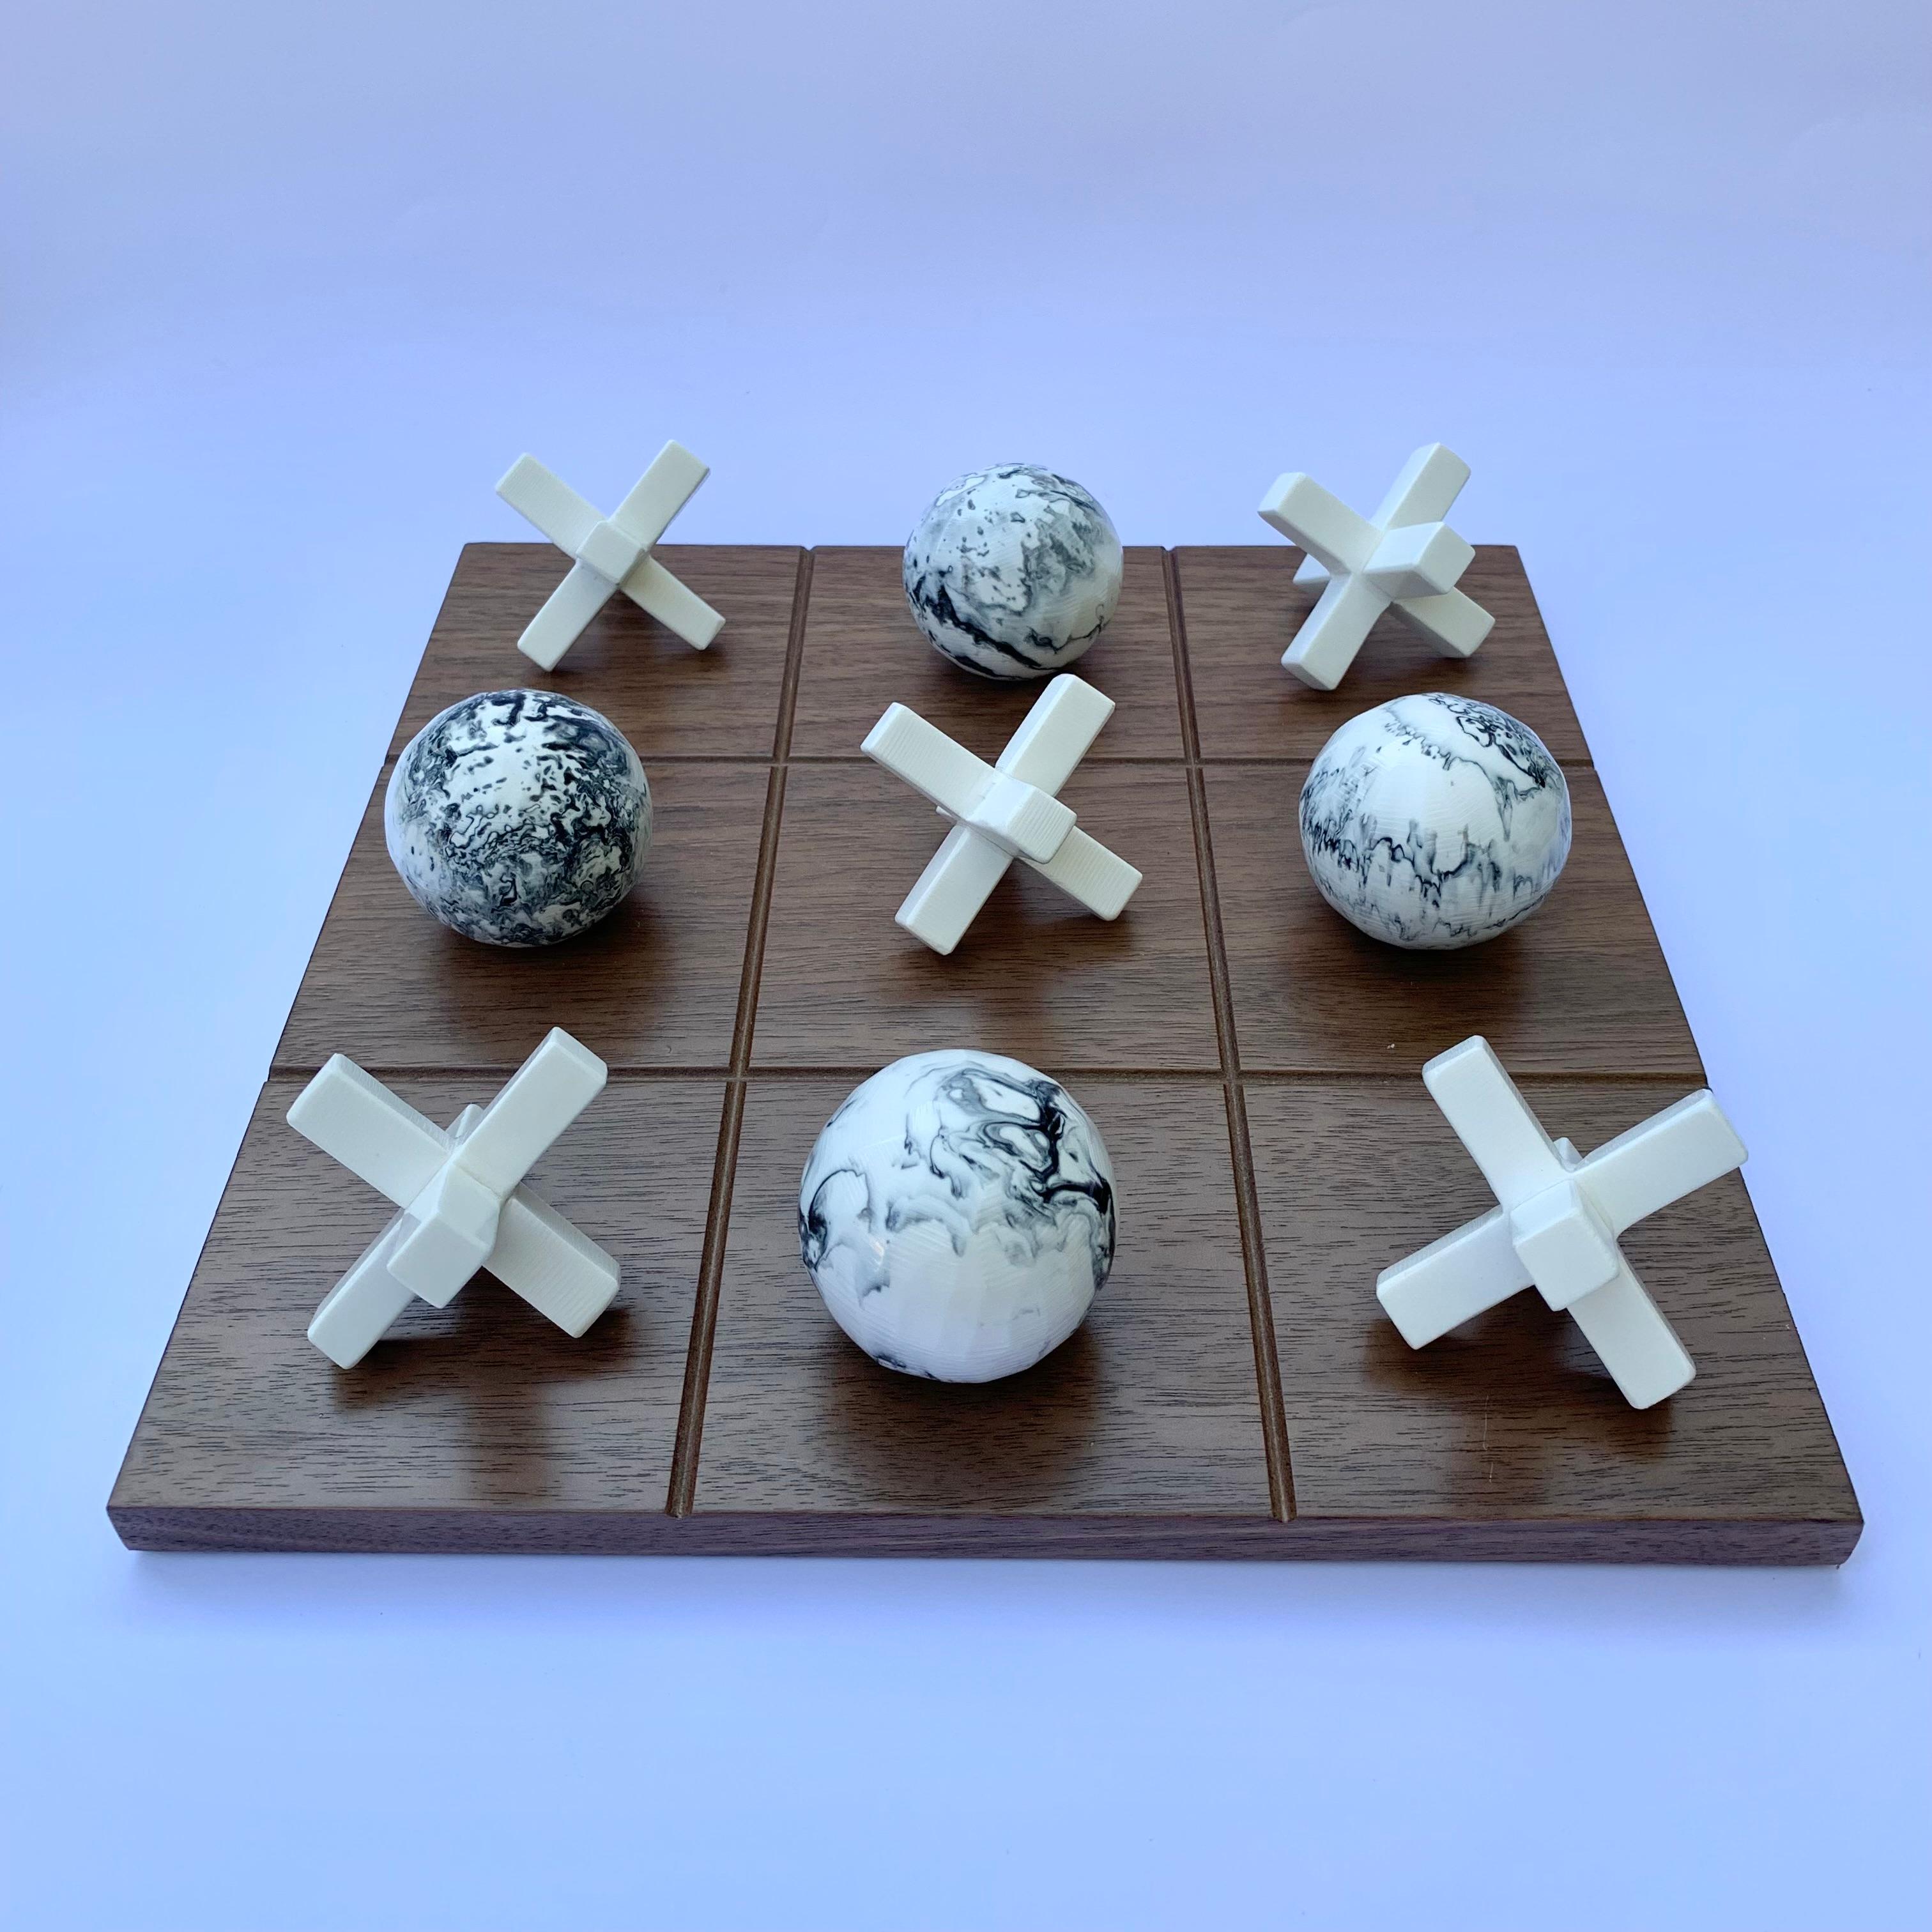 Unser Tic Tac Toe ist eine schöne, moderne und lustige Version des klassischen Spiels. Die dreidimensionalen Stücke sind handgefertigt aus weißem Harz mit schwarzer marmorierter Textur und das Brett ist aus Eichenholzfurnier gefertigt. Es wird das